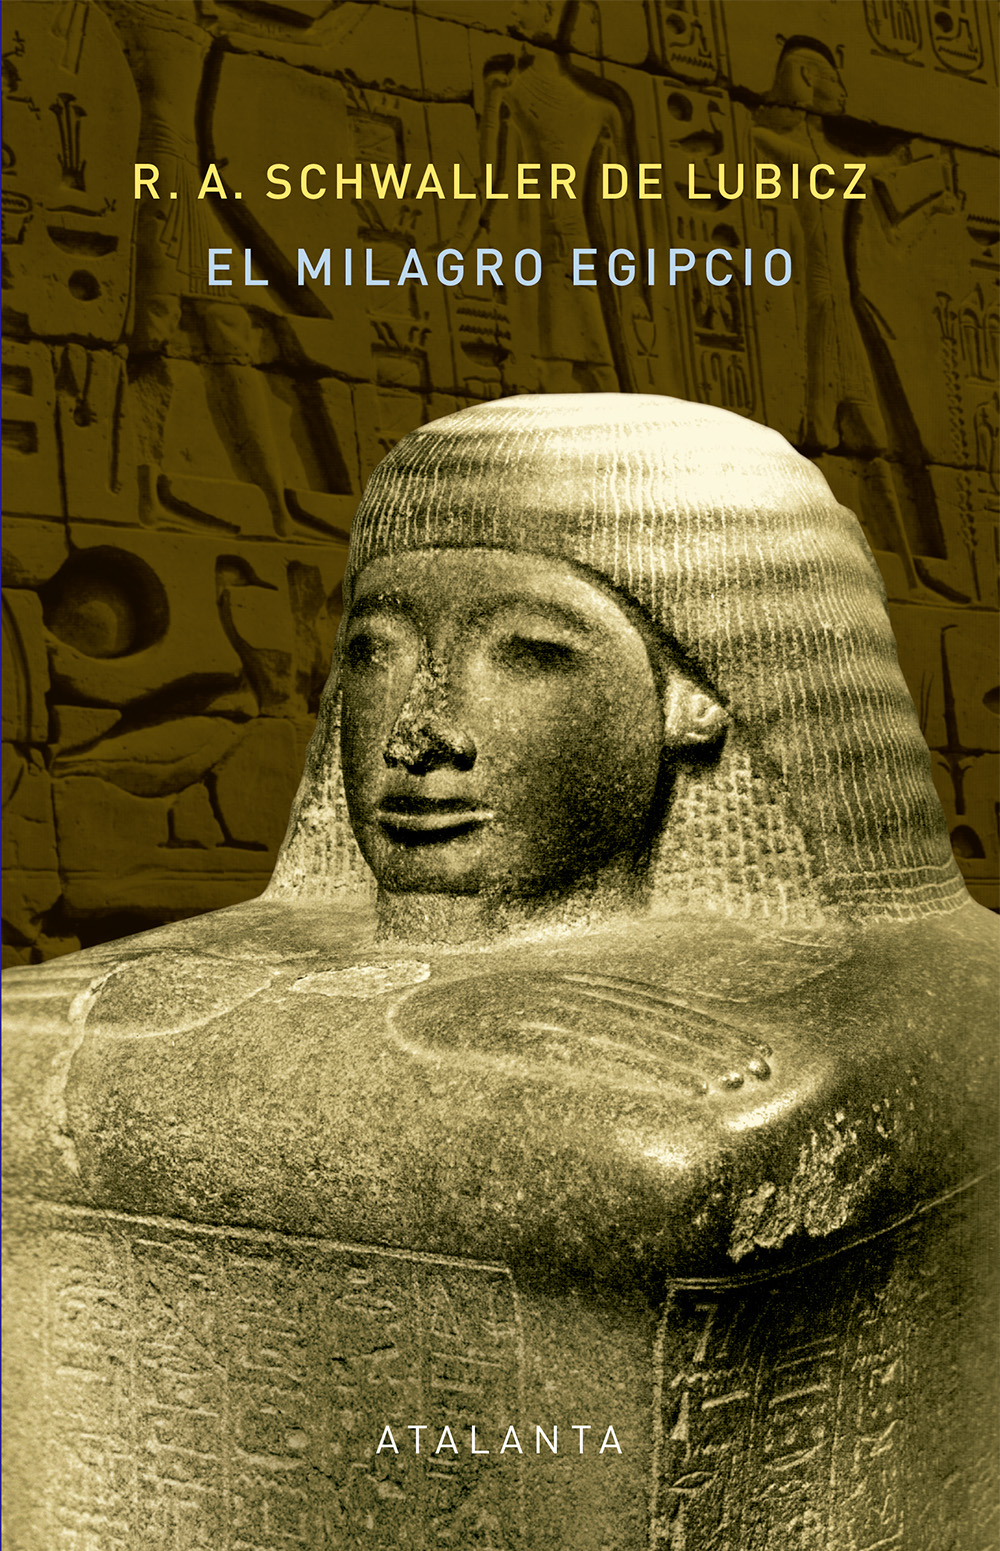 Libros acerca de historia y cultura egipcia antigua. Portada-Milagro-egipcio